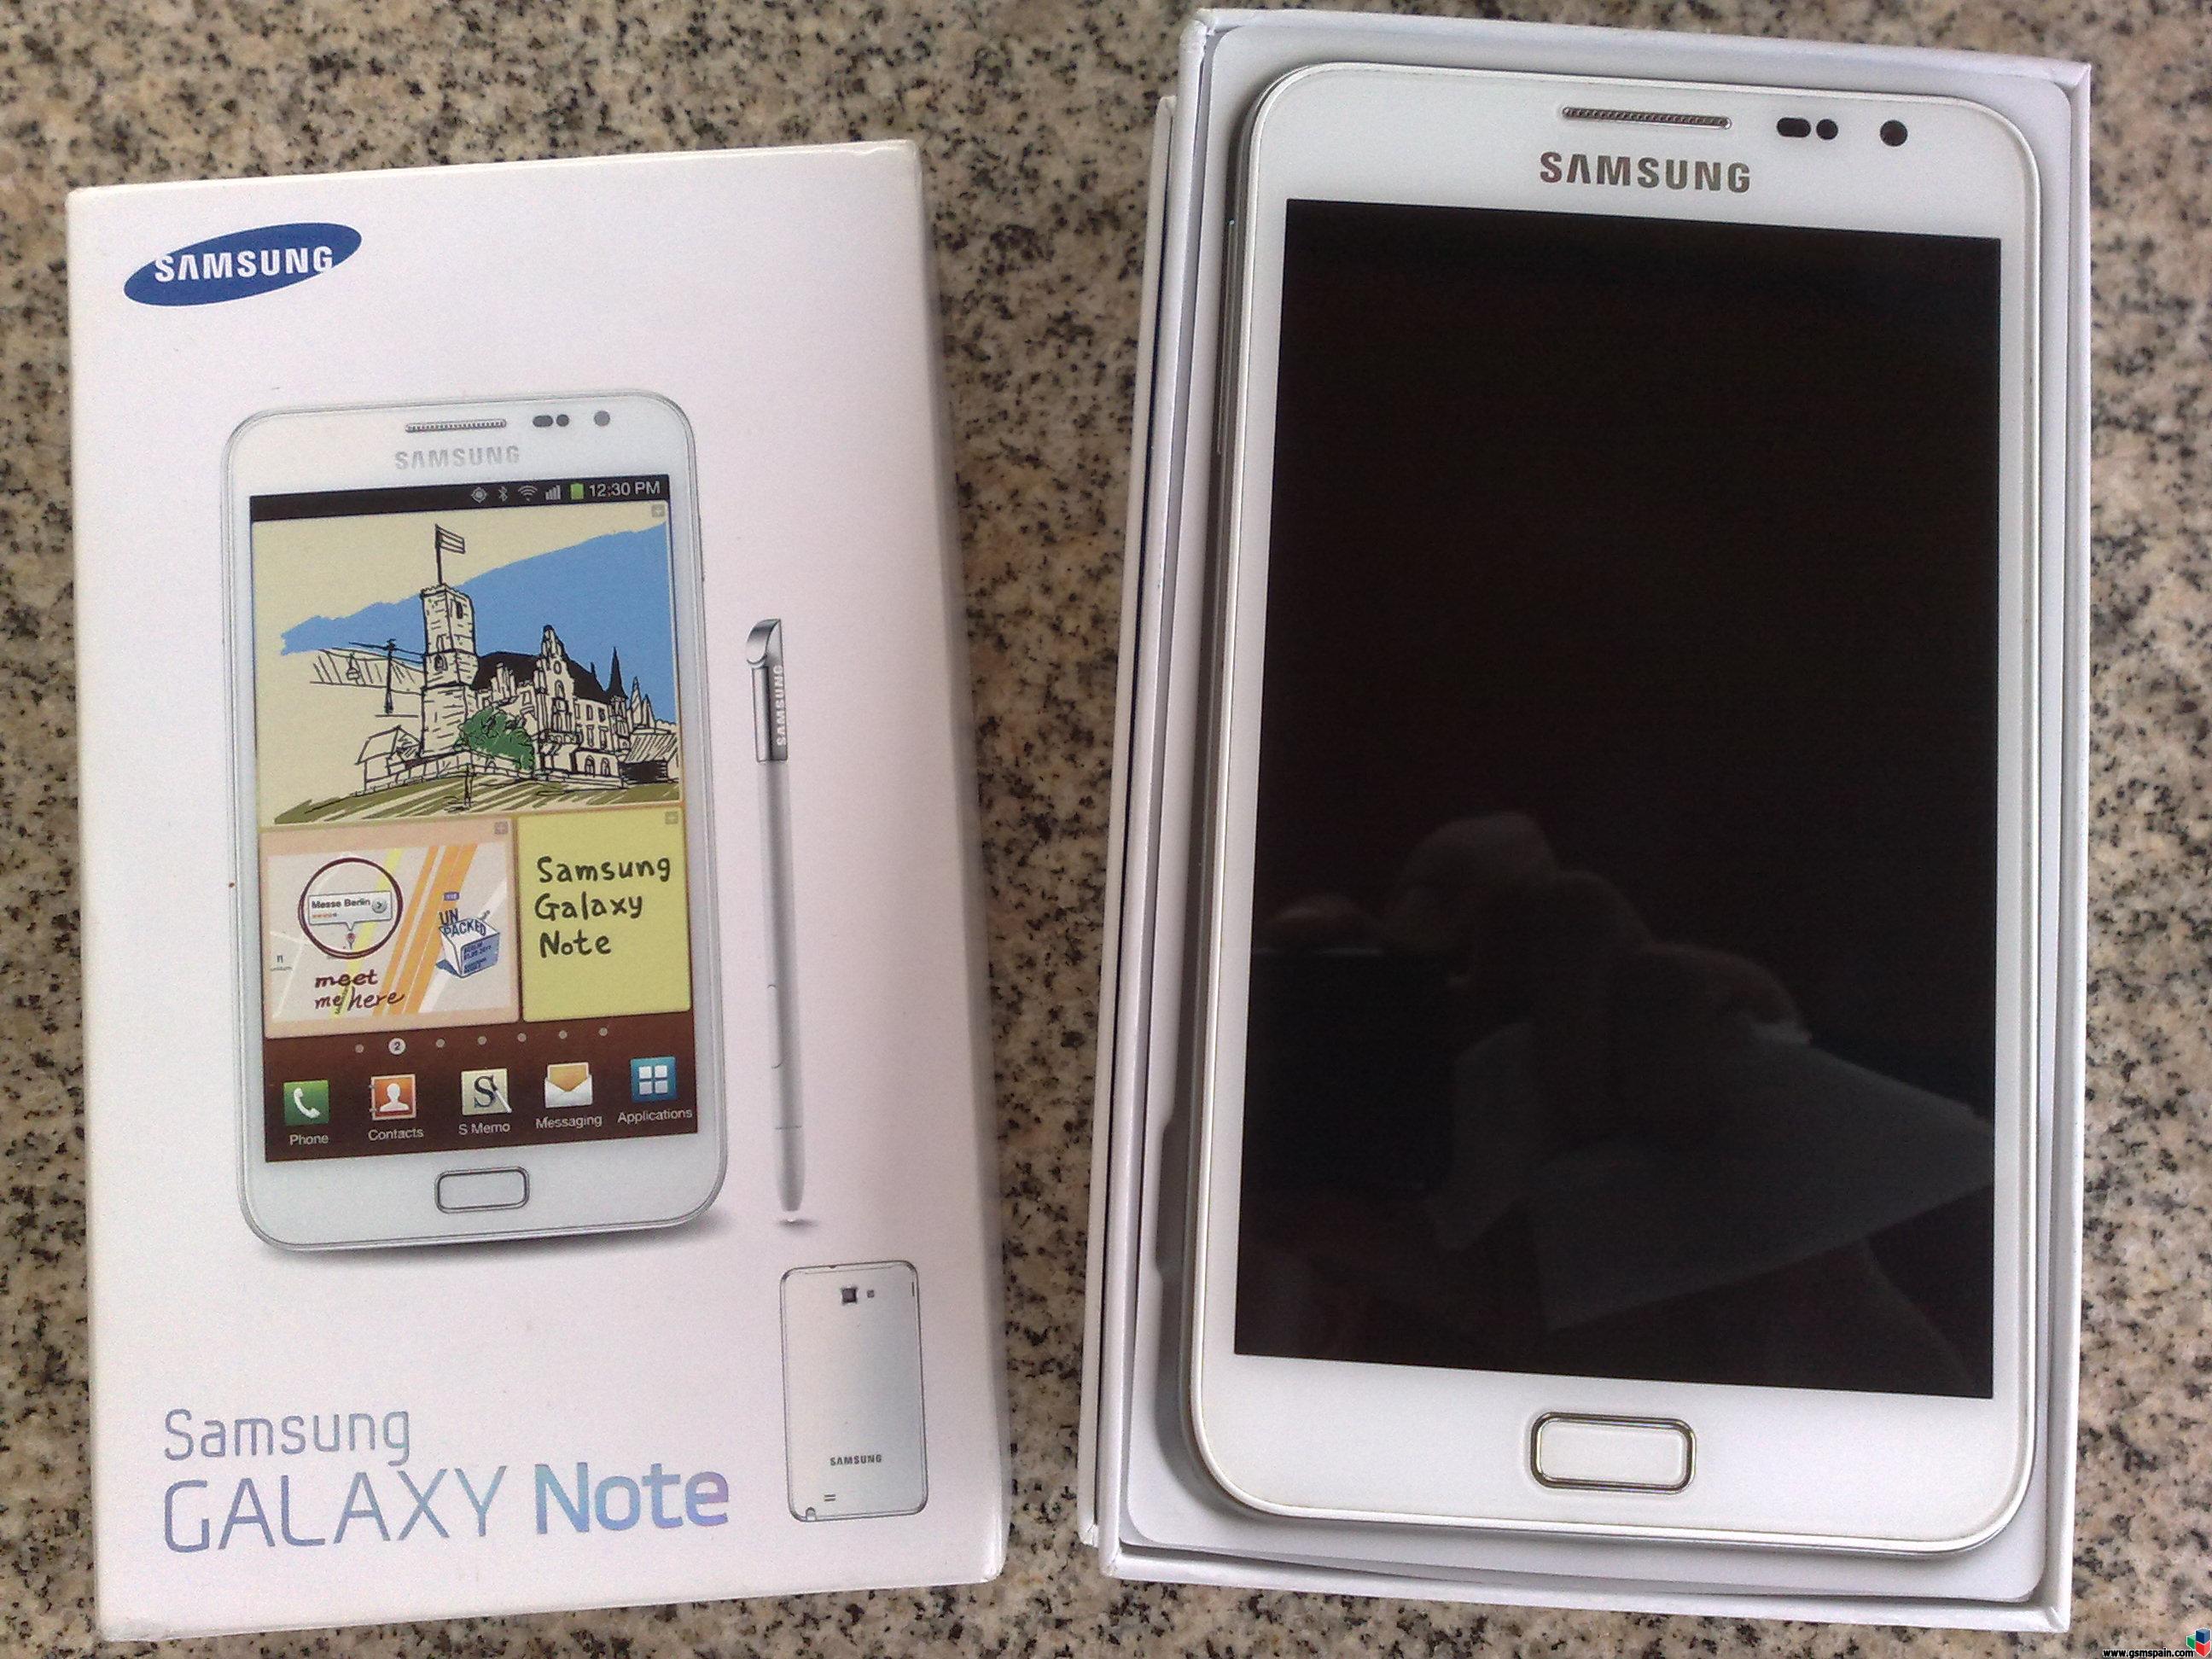 [VENDO] Samsung Galaxy NOTE Blanco - Libre, nuevo y factura [360]